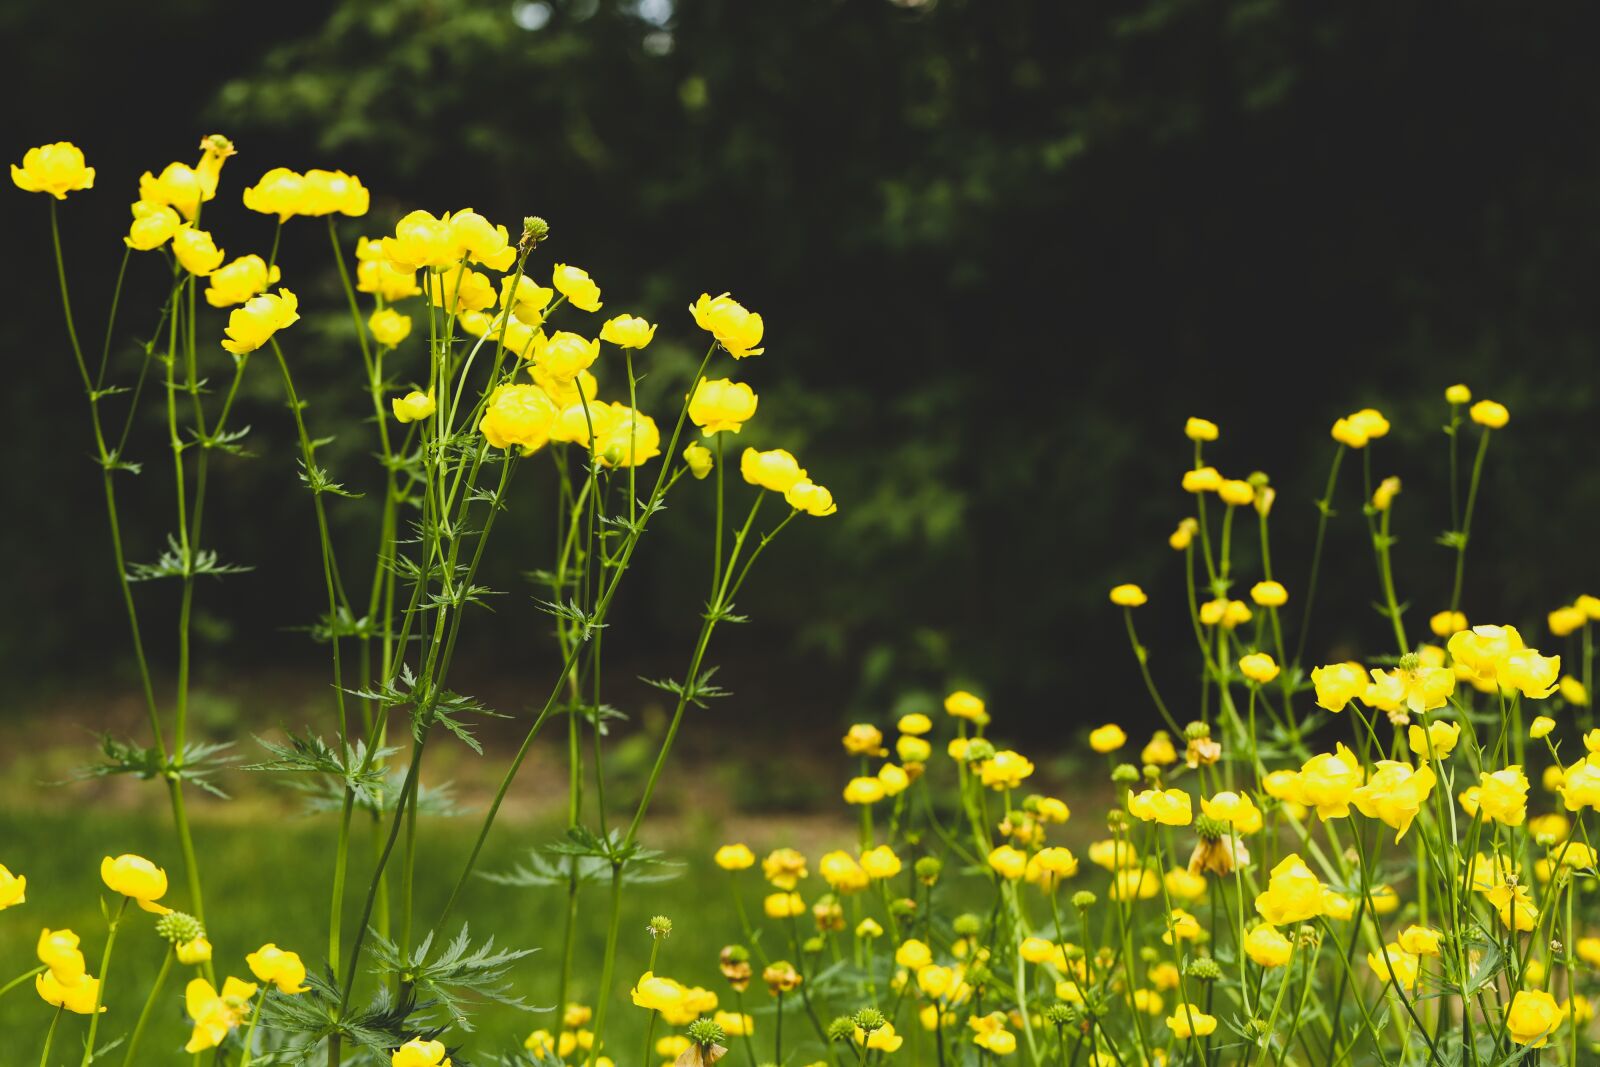 Canon EOS R sample photo. Flower, garden, summer photography